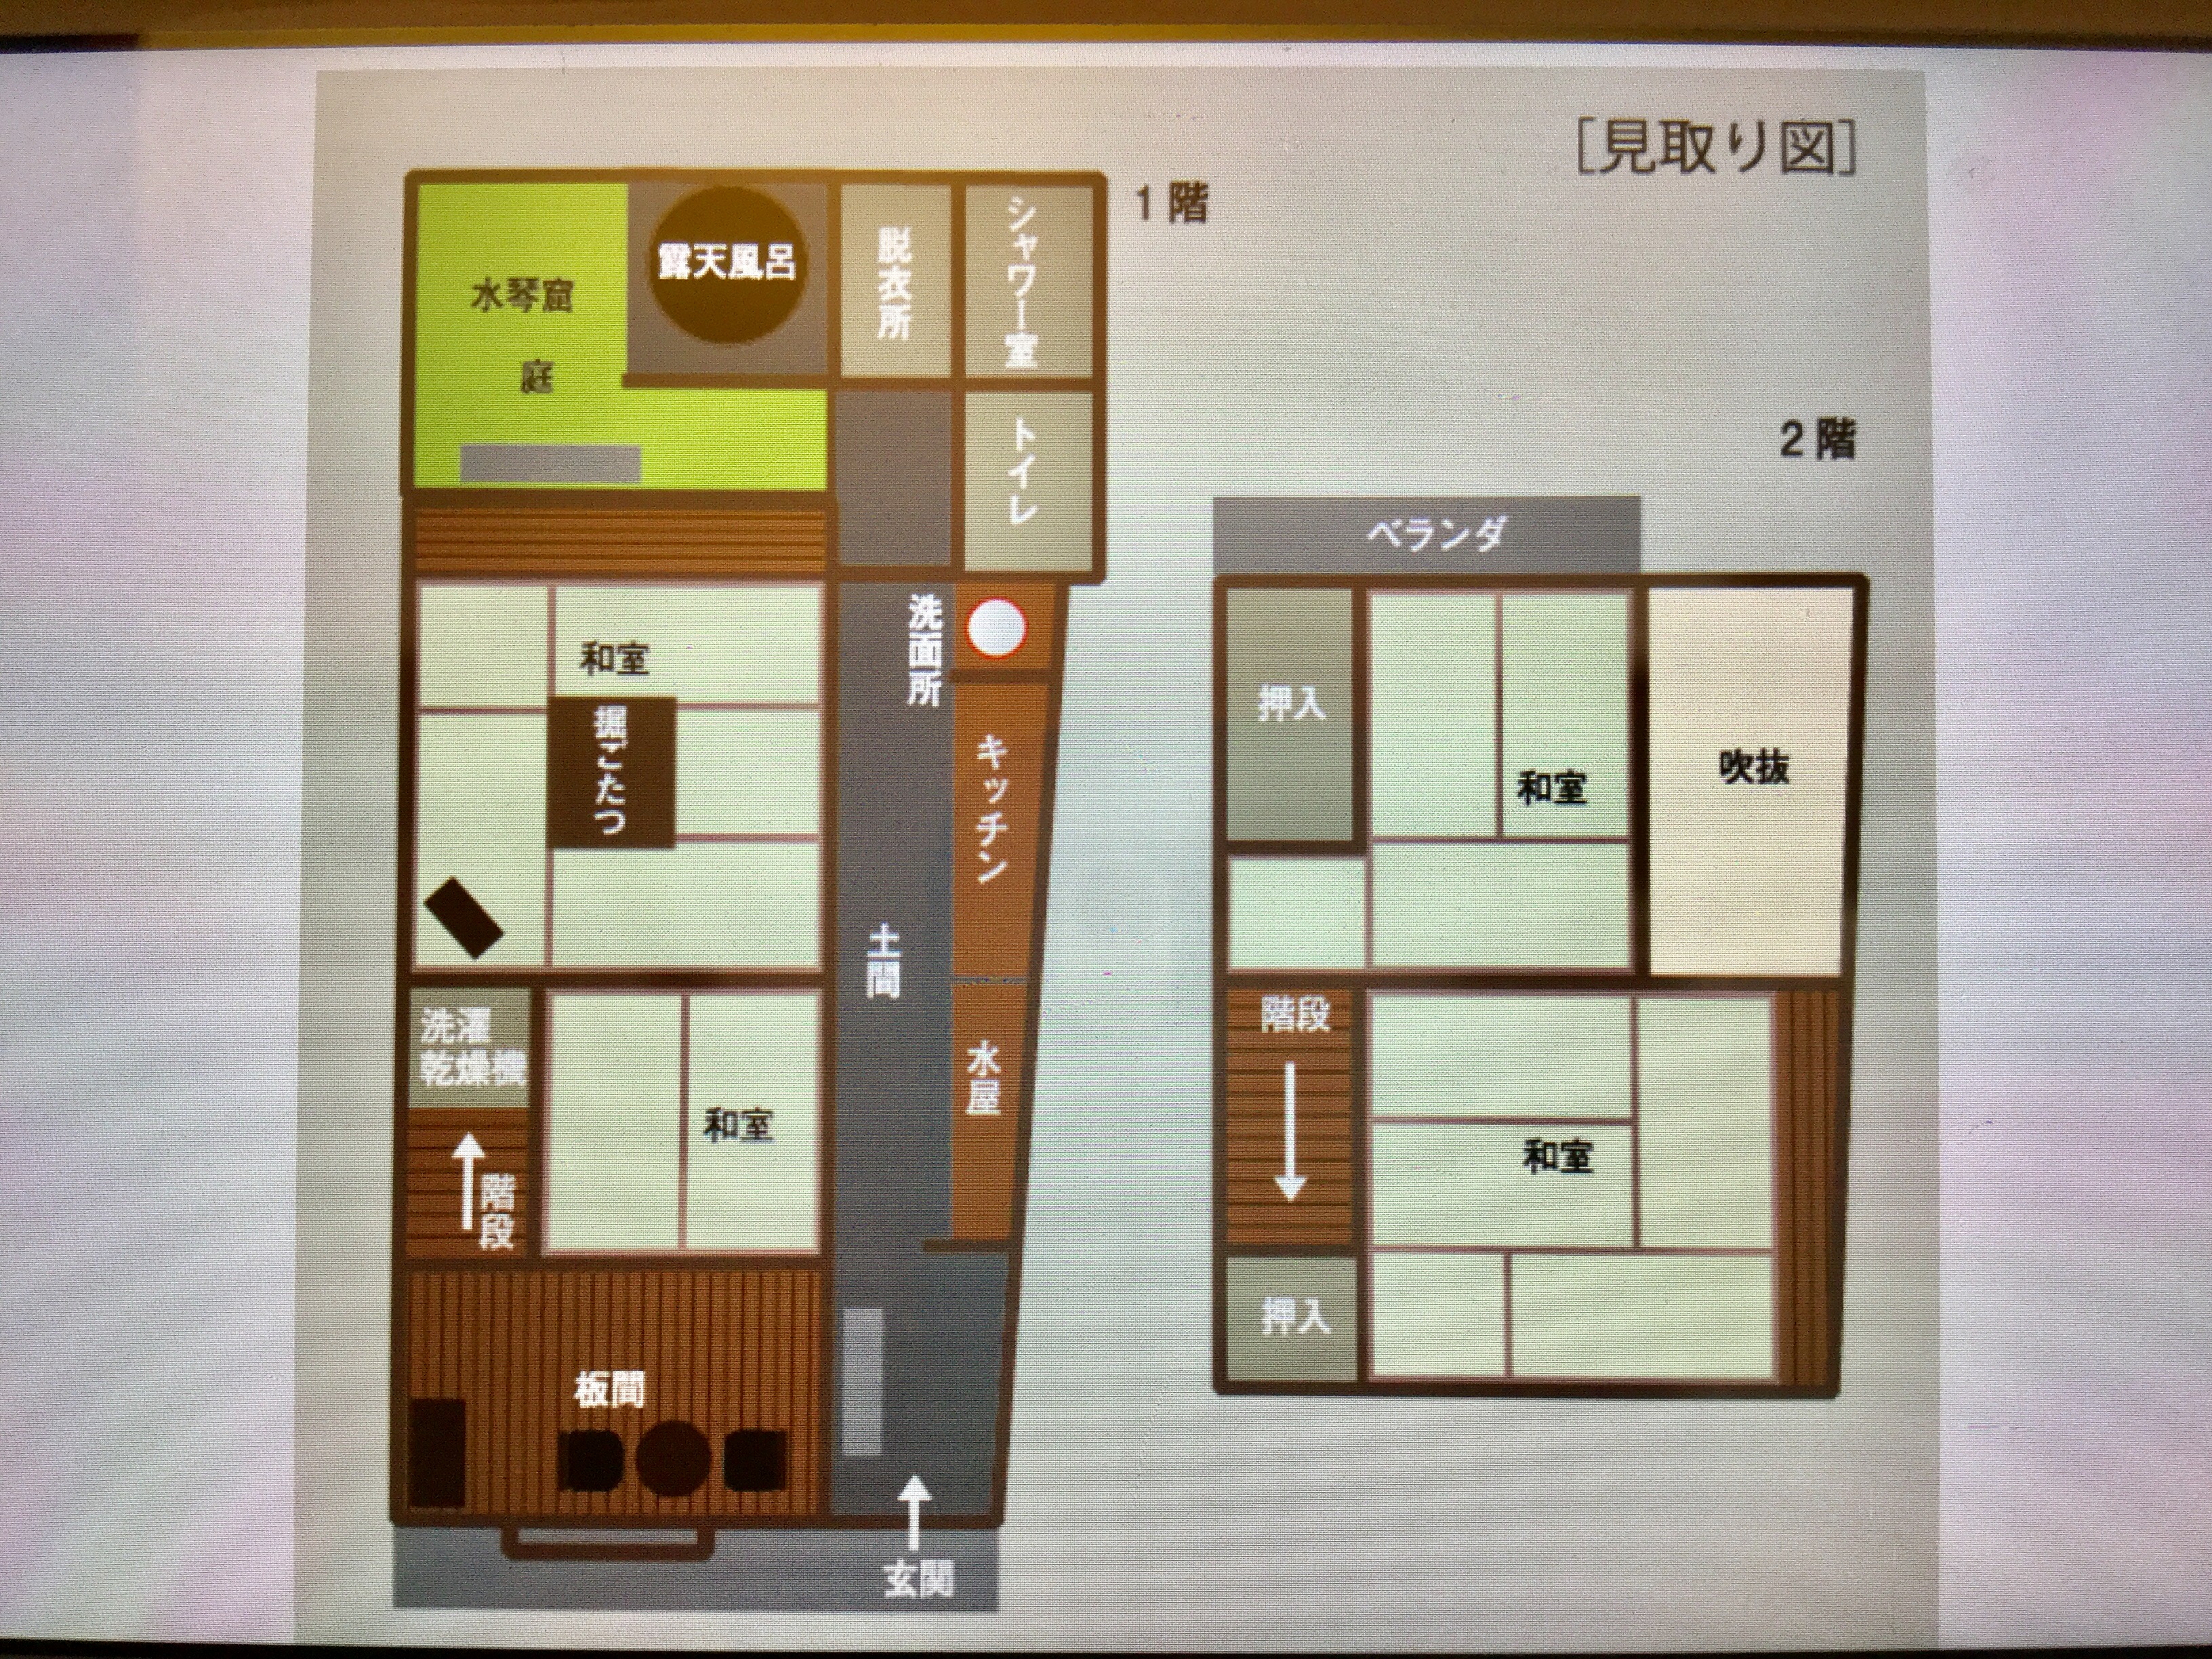 町家つばら五条坂  お部屋図、二階建の小さな町家です。  Tsubara floor plan 